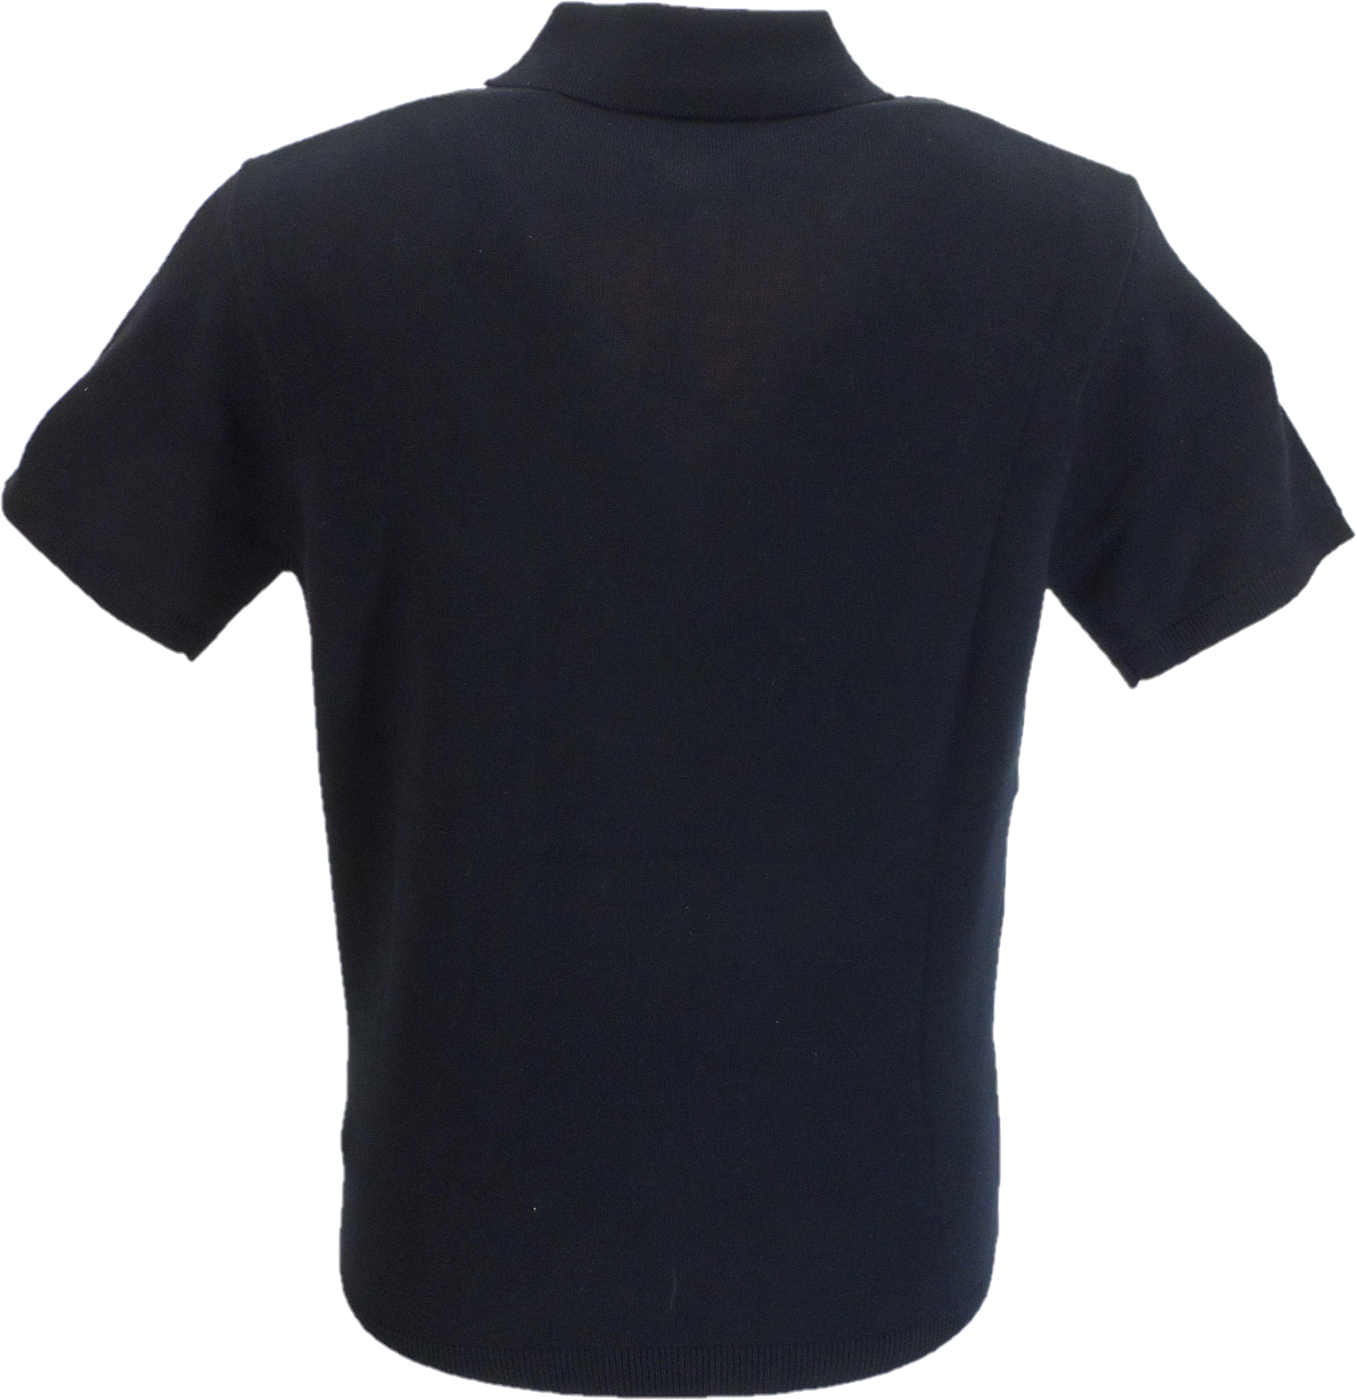 Gabicci Vintage Herren-Poloshirt aus Marineblau/Rosa/Weiß mit Searle-Streifen